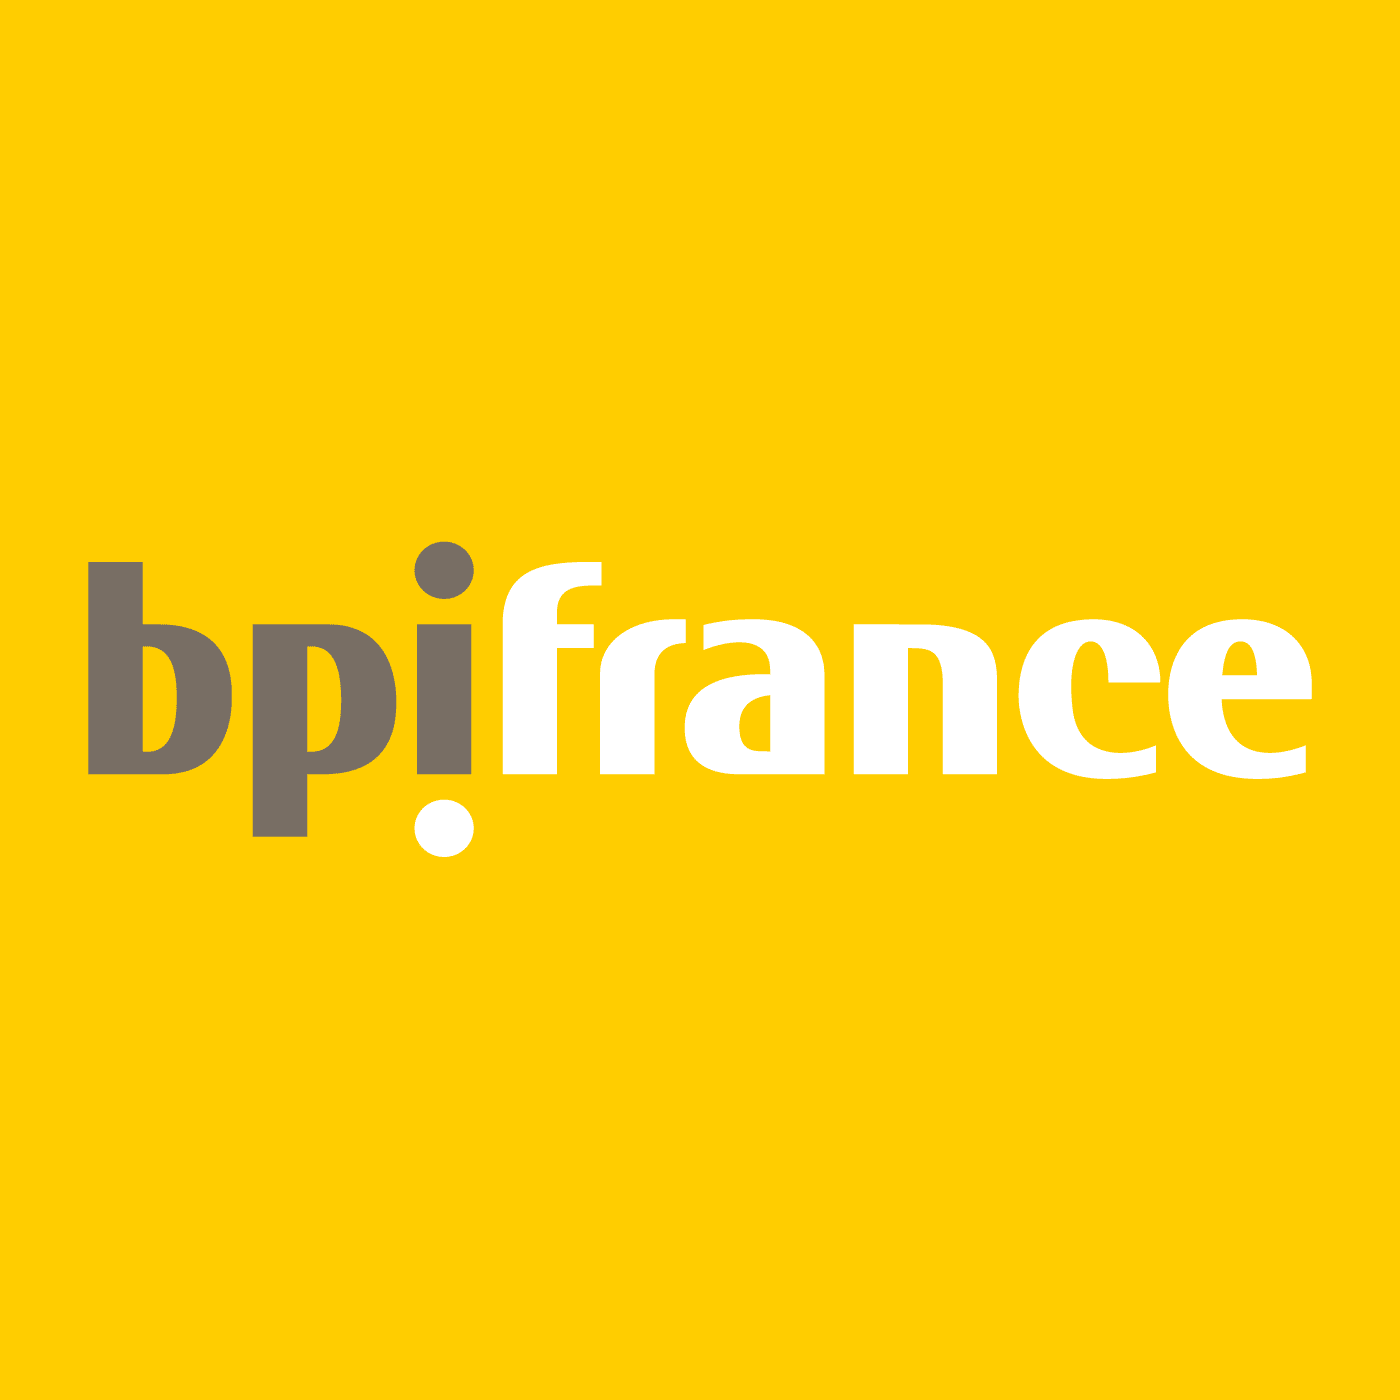 Le logo de BPI France